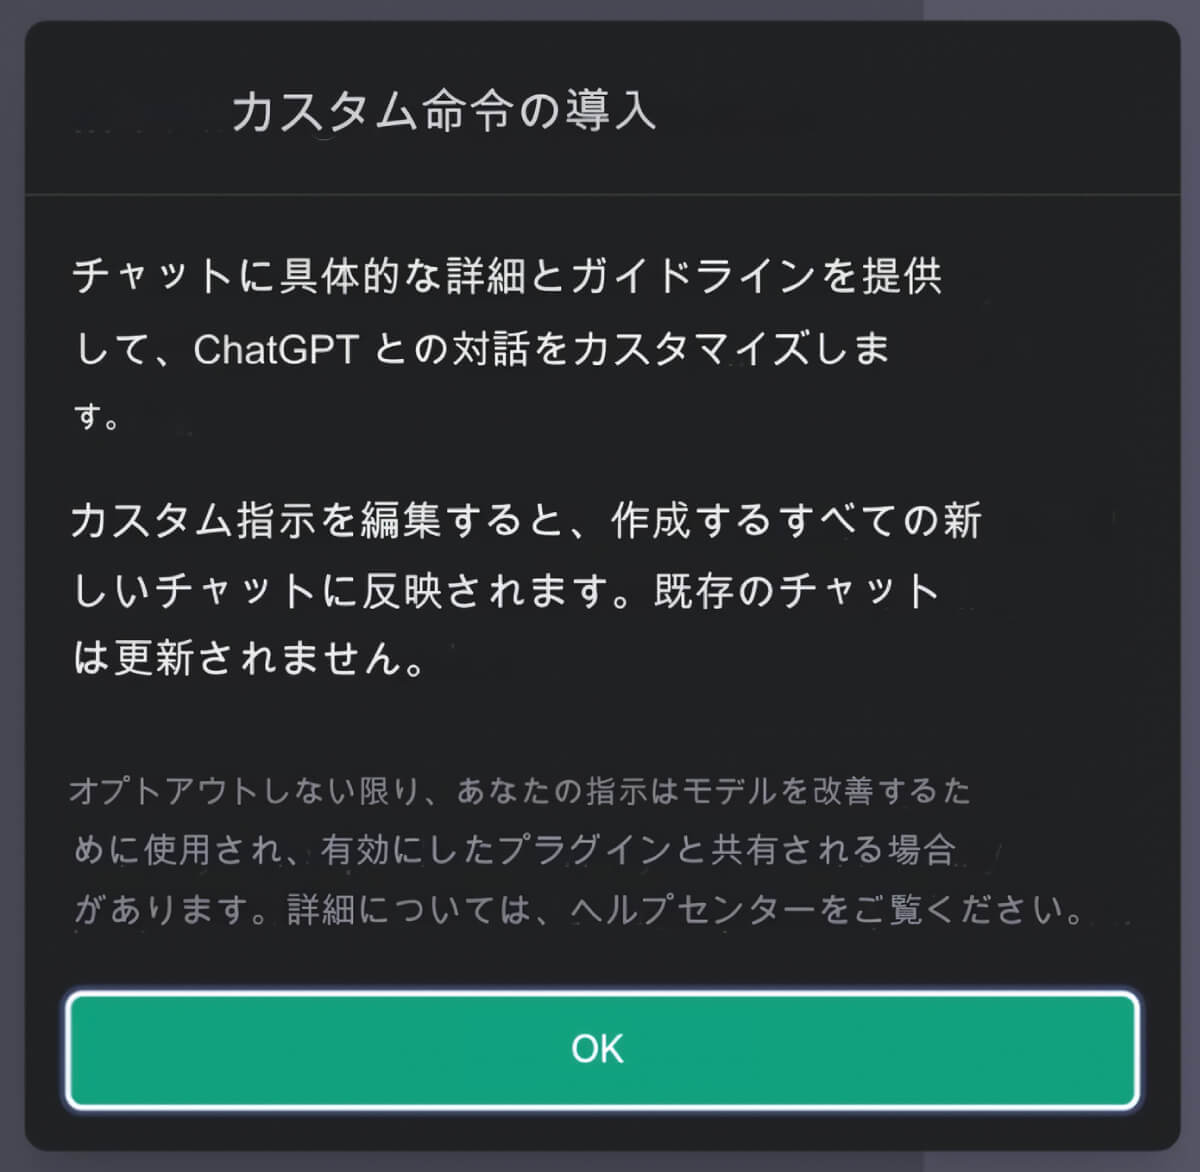 Introducing Custom instructions画面のOKボタンをタップした状態の日本語訳のスクリーンショット